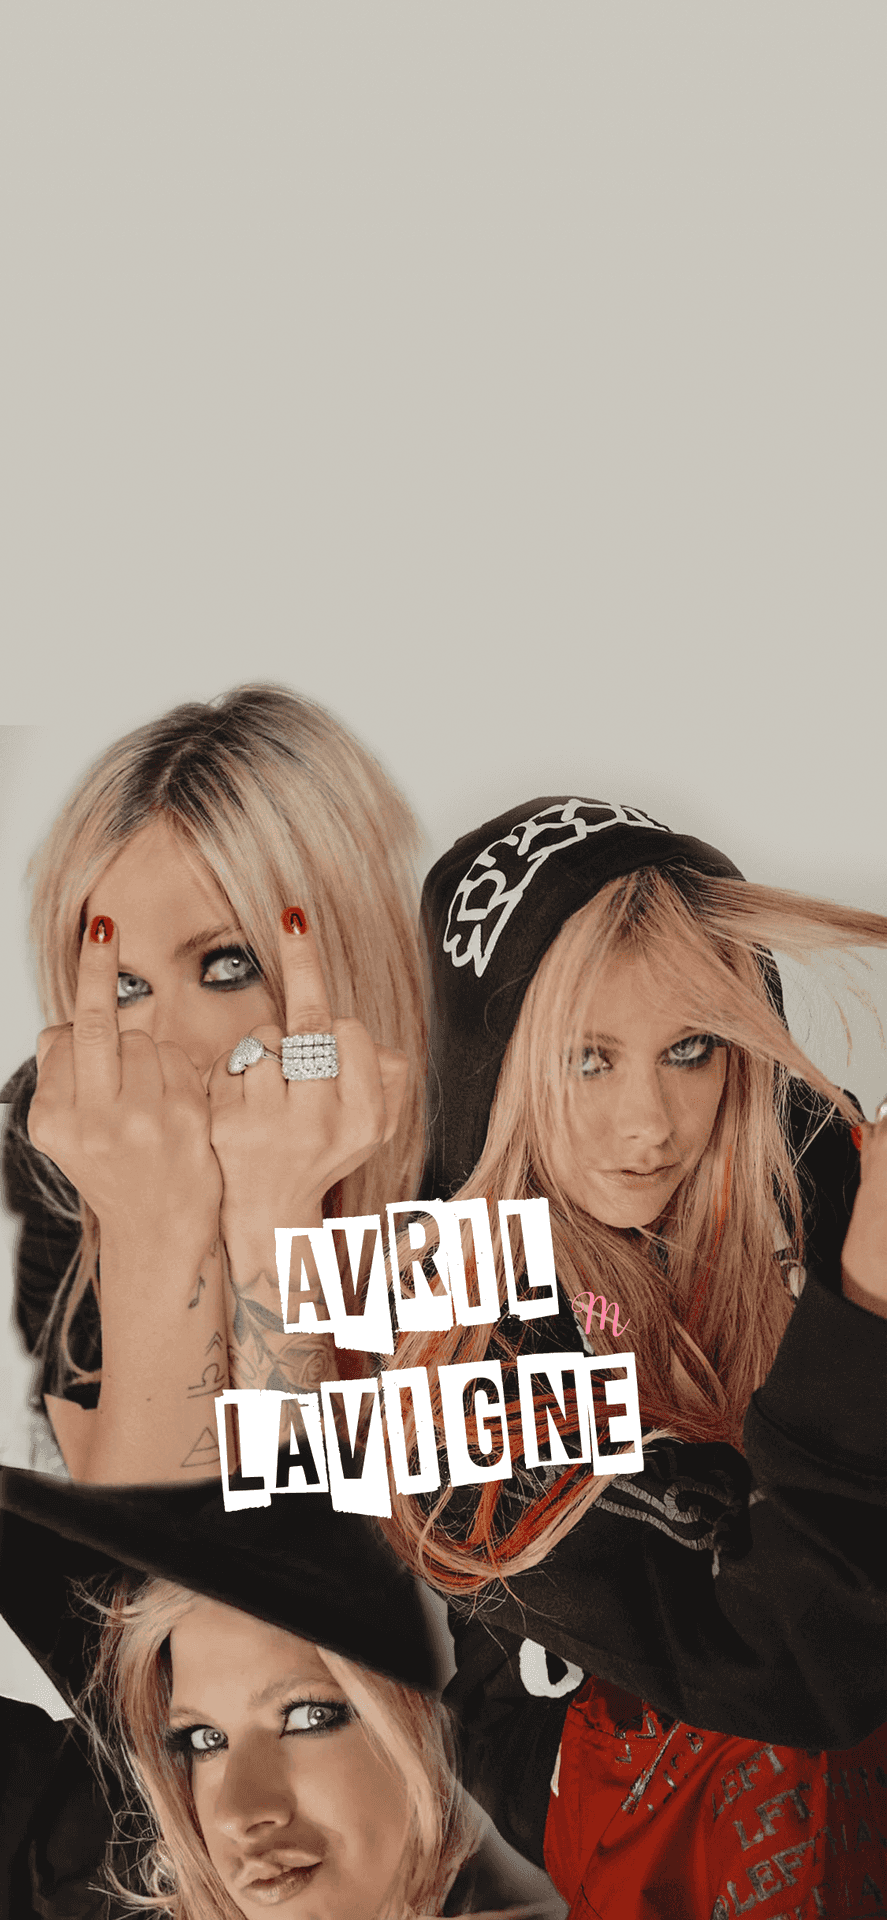 Avrillavigne È L'artista Che Ha Aperto La Strada A Una Nuova Generazione Di Pop Punk